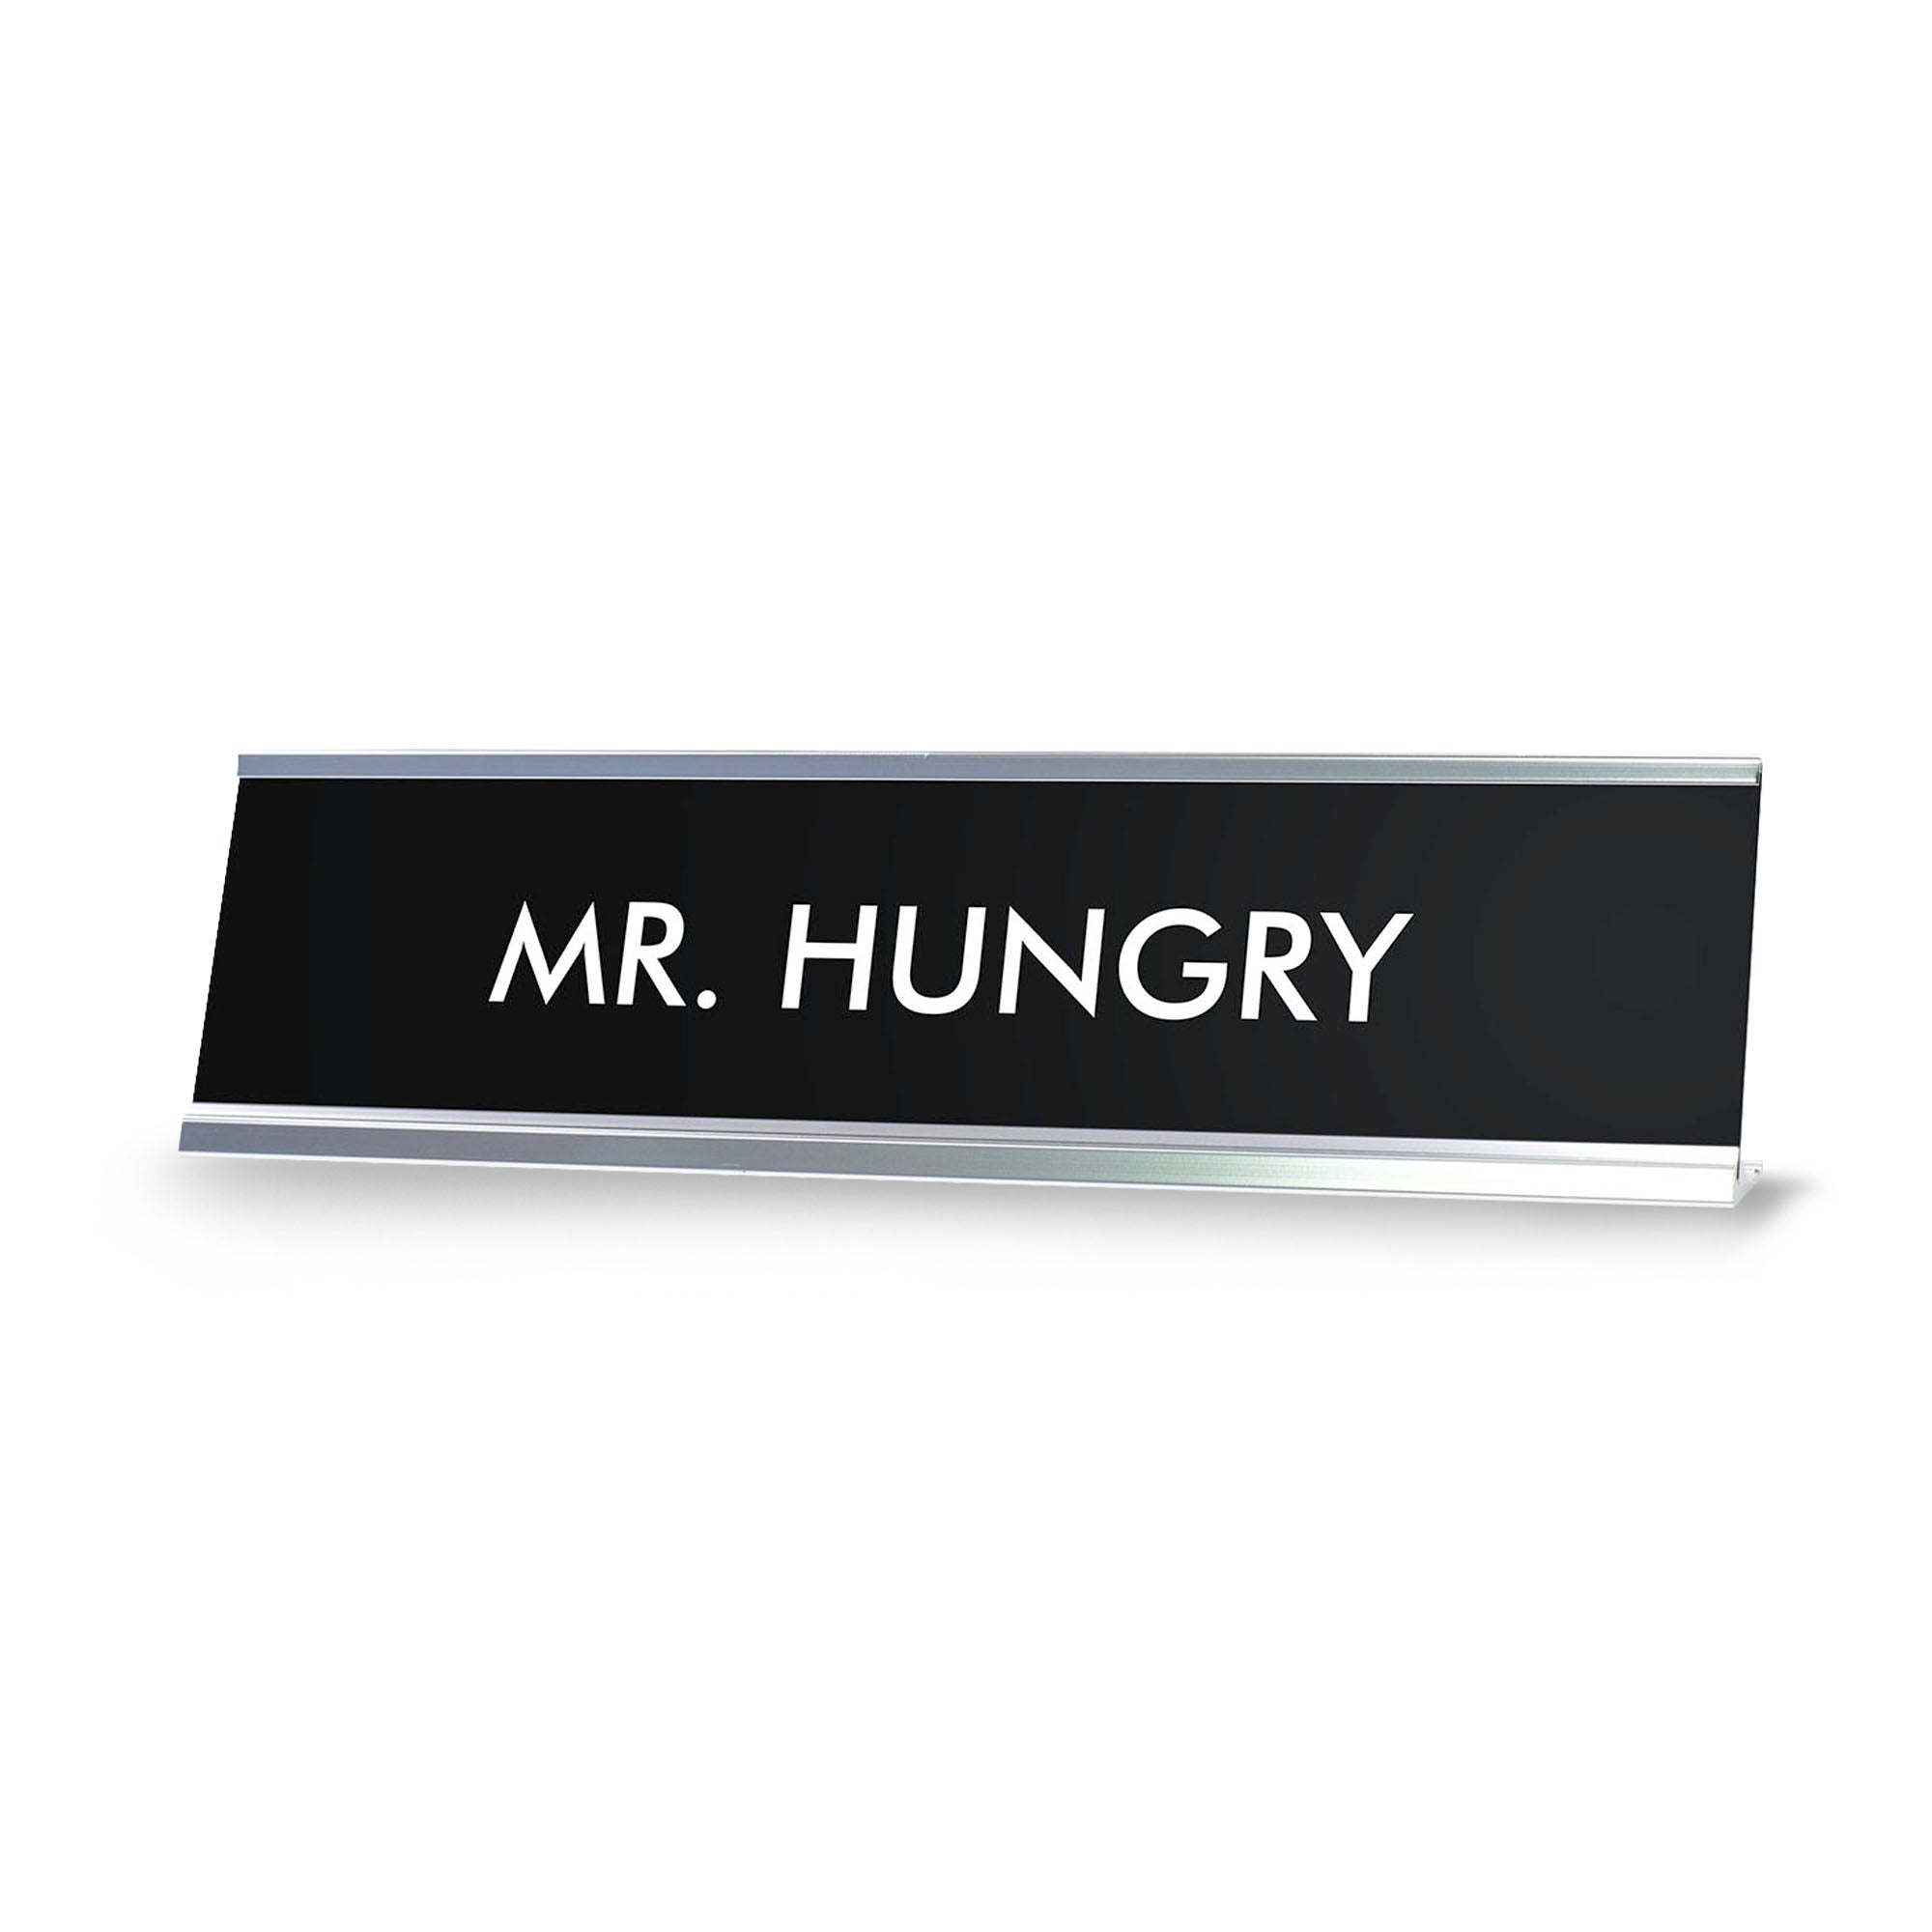 MR.HUNGRY Novelty Desk Sign